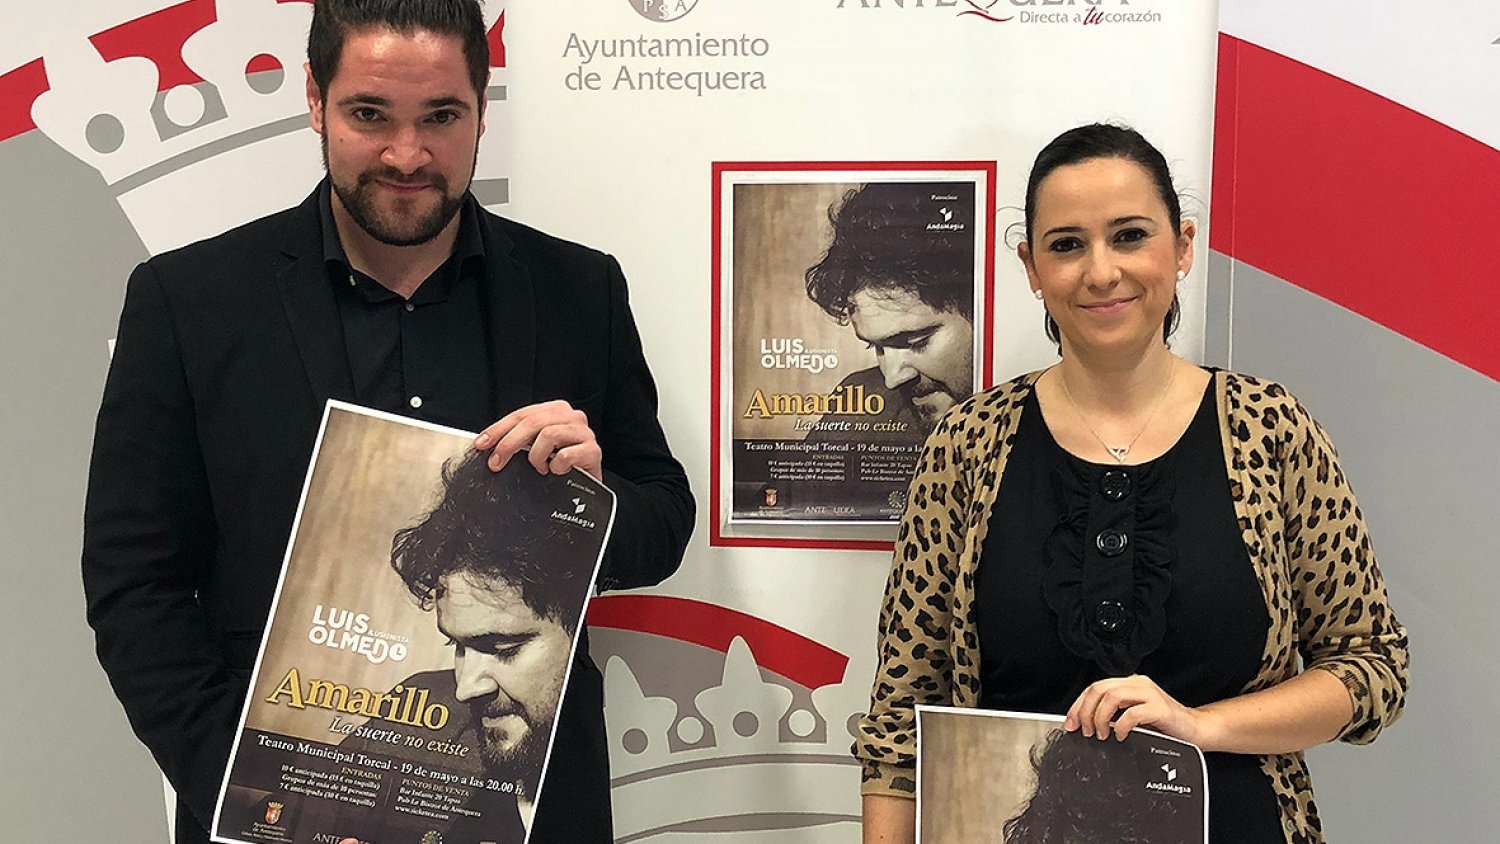 El ilusionista antequerano Luis Olmedo estrenará en el Teatro Torcal su espectáculo 